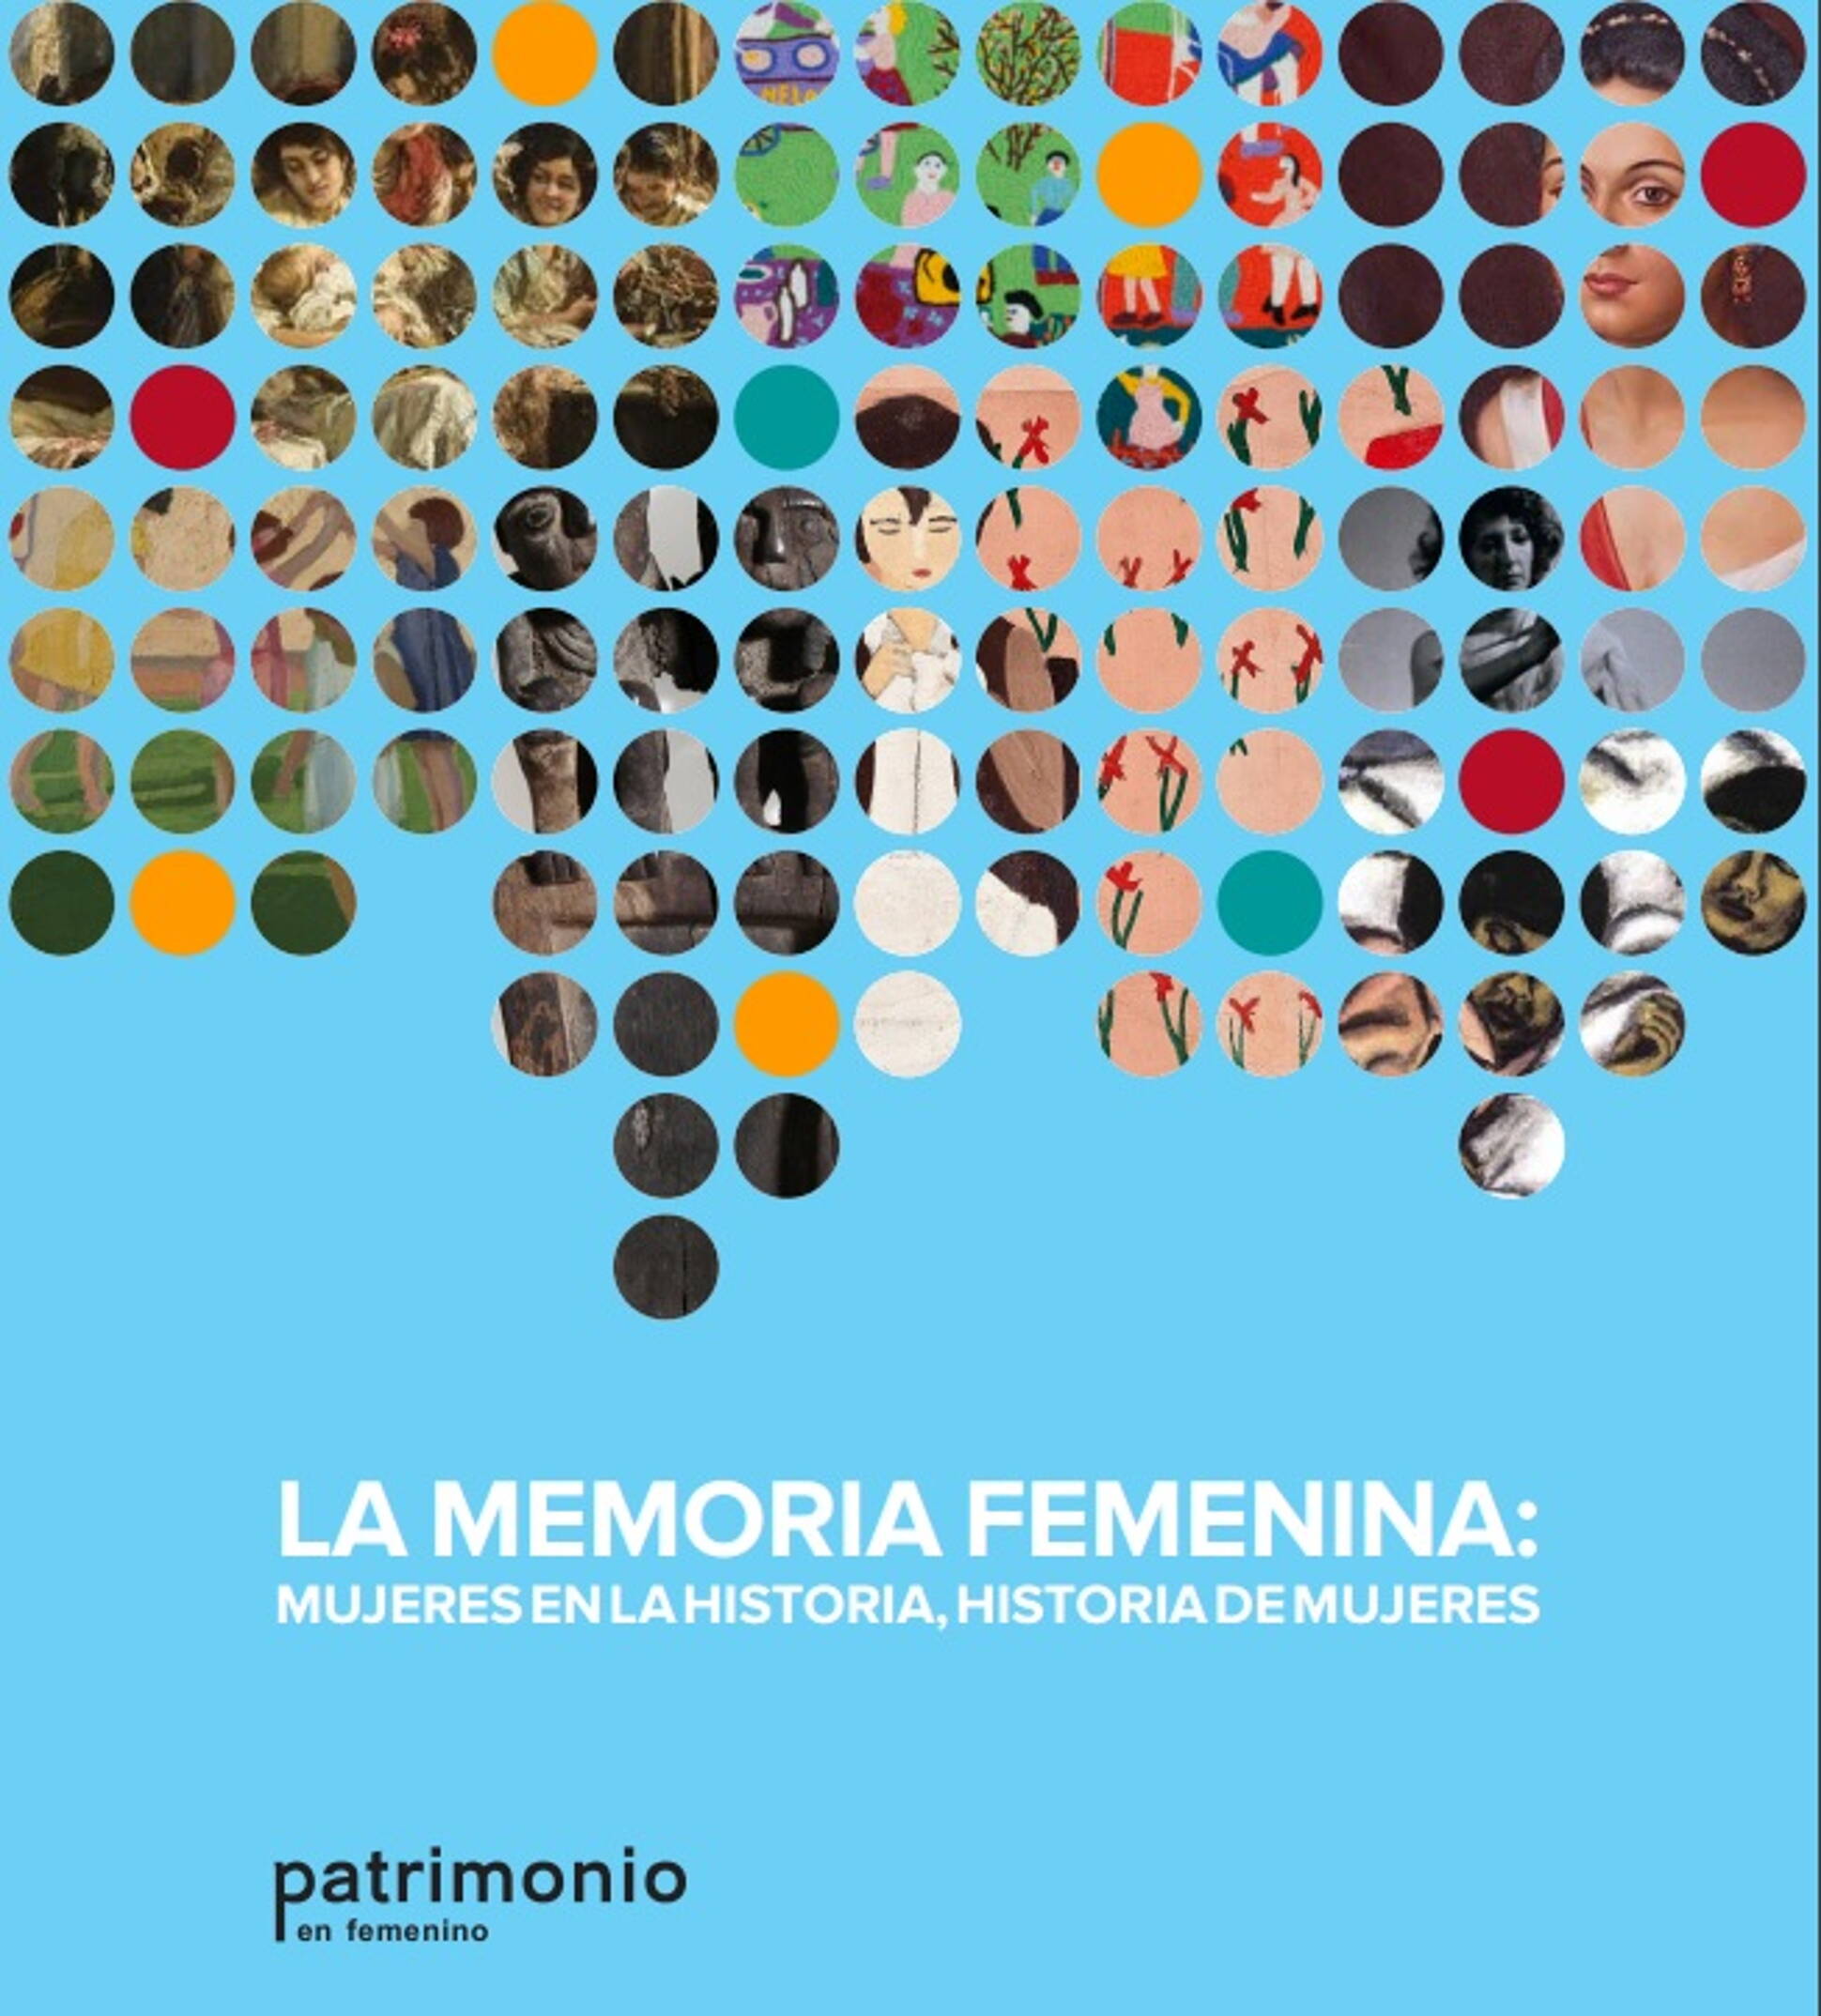 “La Memoria femenina: mujeres en la historia, historia de mujeres”